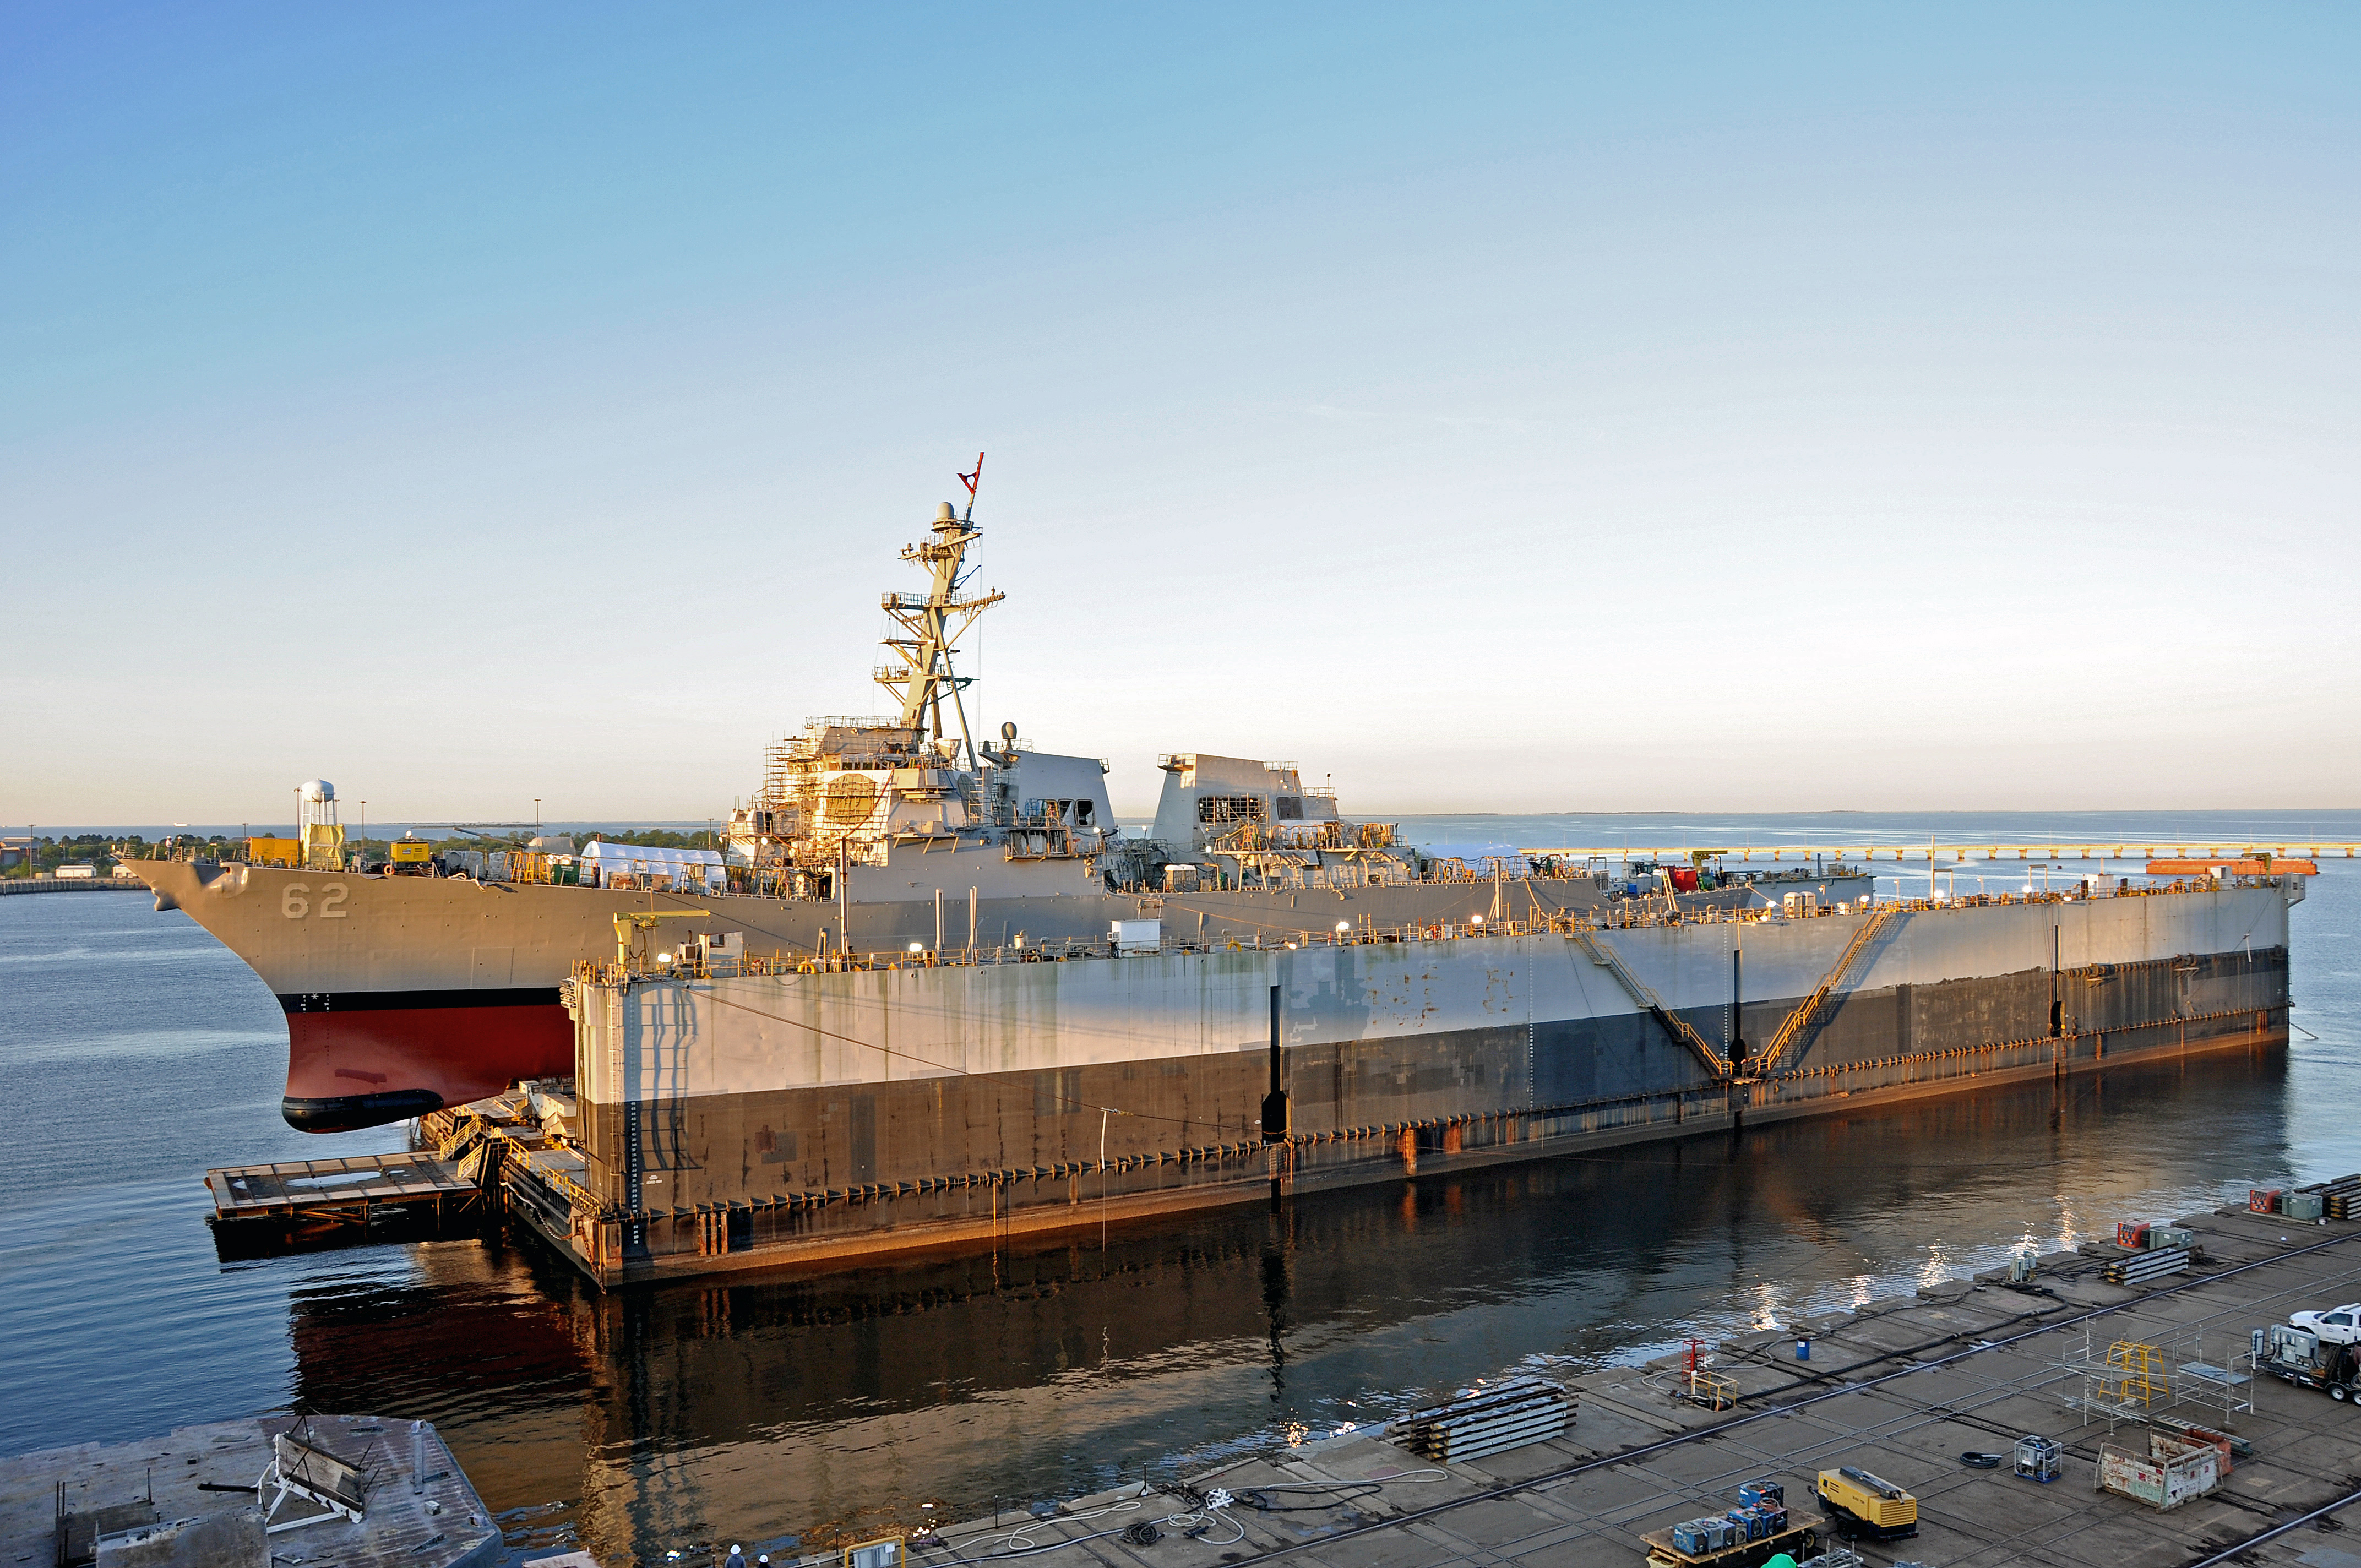 Американский эсминец УРО USS Fitzgerald (DDG 62), типа Arleigh Burke,  в сухом доке перед спуском на воду после завершения ремонта, фото сделано 16 апреля 2019 года на верфи компании Huntington Ingalls Industries в  Pascagoula, шт. Миссисипи